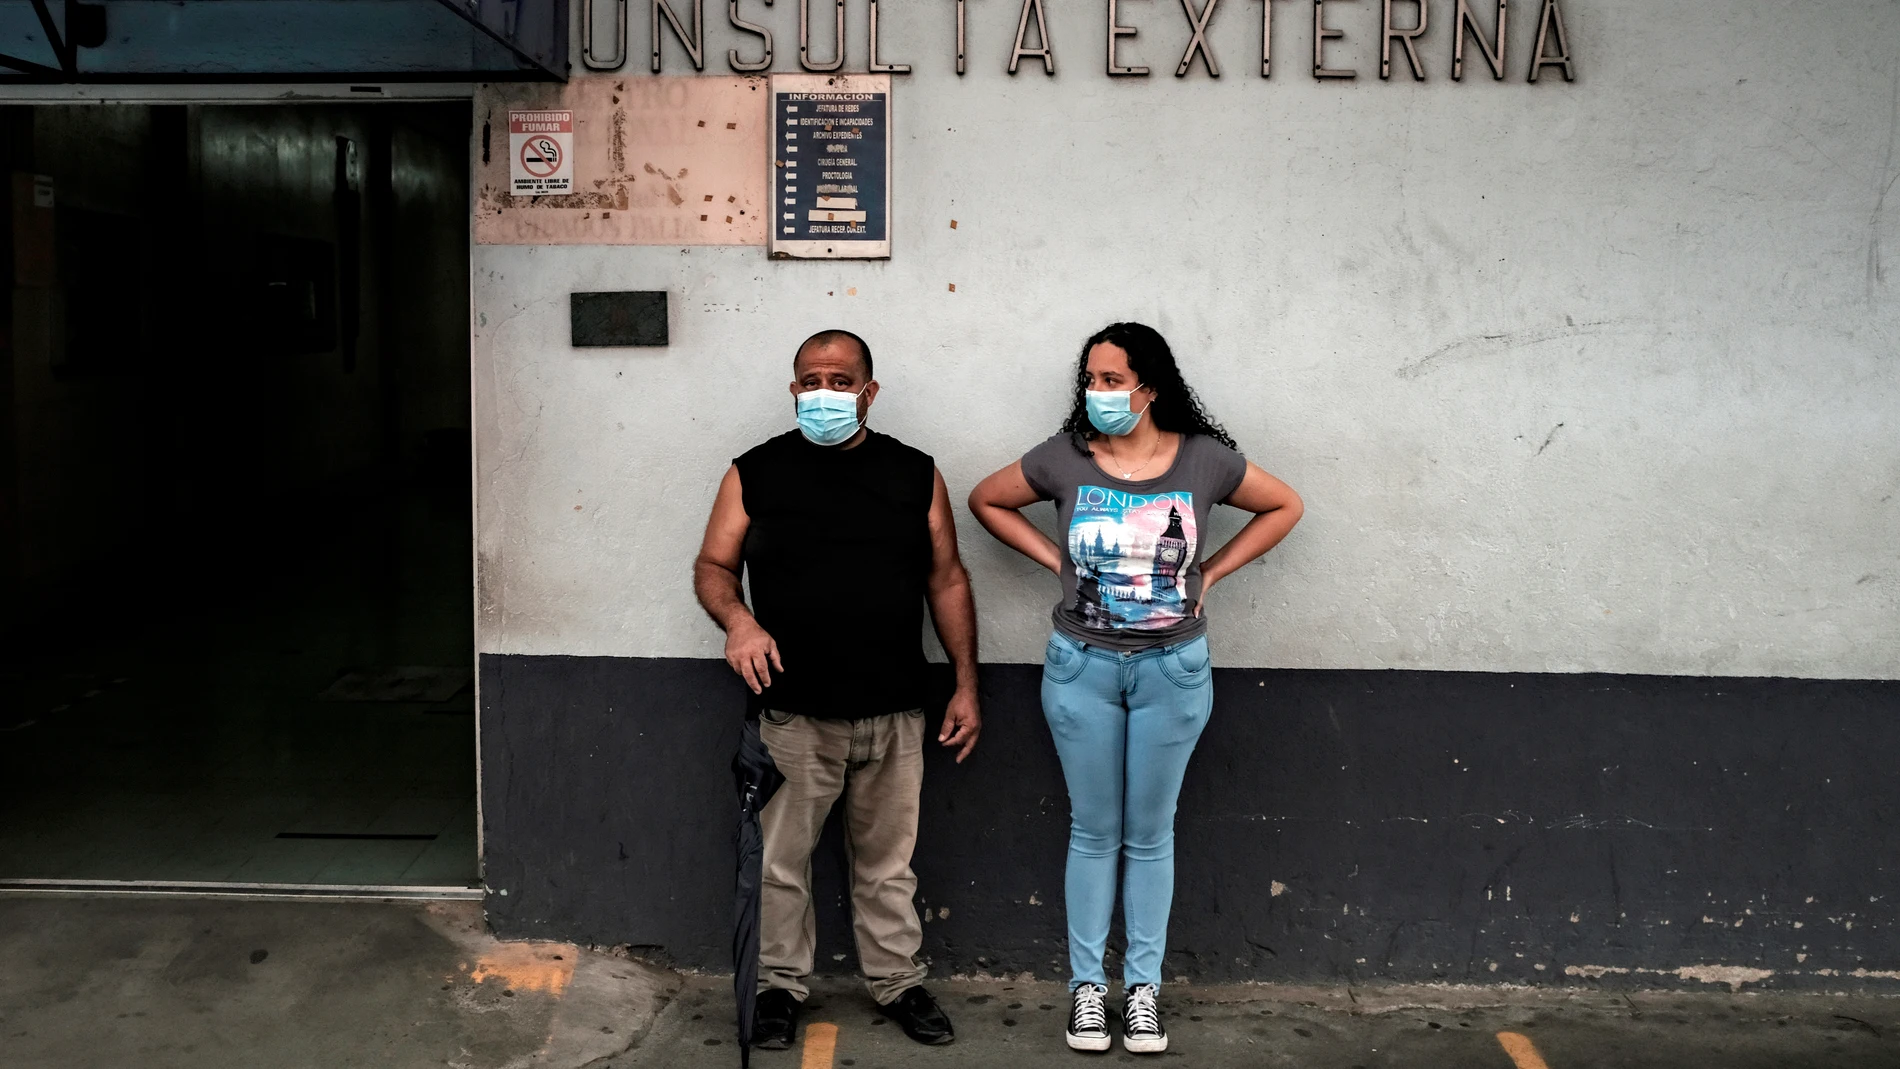 -FOTODELDÍA- SJS01. SAN JOSÉ (COSTA RICA), 27/08/2021.- Una pareja espera a la entrada de un hospital, el 25 de agosto de 2021, en San José (Costa Rica). Con el 97 % de ocupación hospitalaria a causa de la covid-19, Guatemala es actualmente el país más afectado por la pandemia en Centroamérica, donde el proceso de vacunación avanza a dos tiempos con El Salvador, Panamá y Costa Rica a la cabeza. EFE/ Jeffrey Arguedas